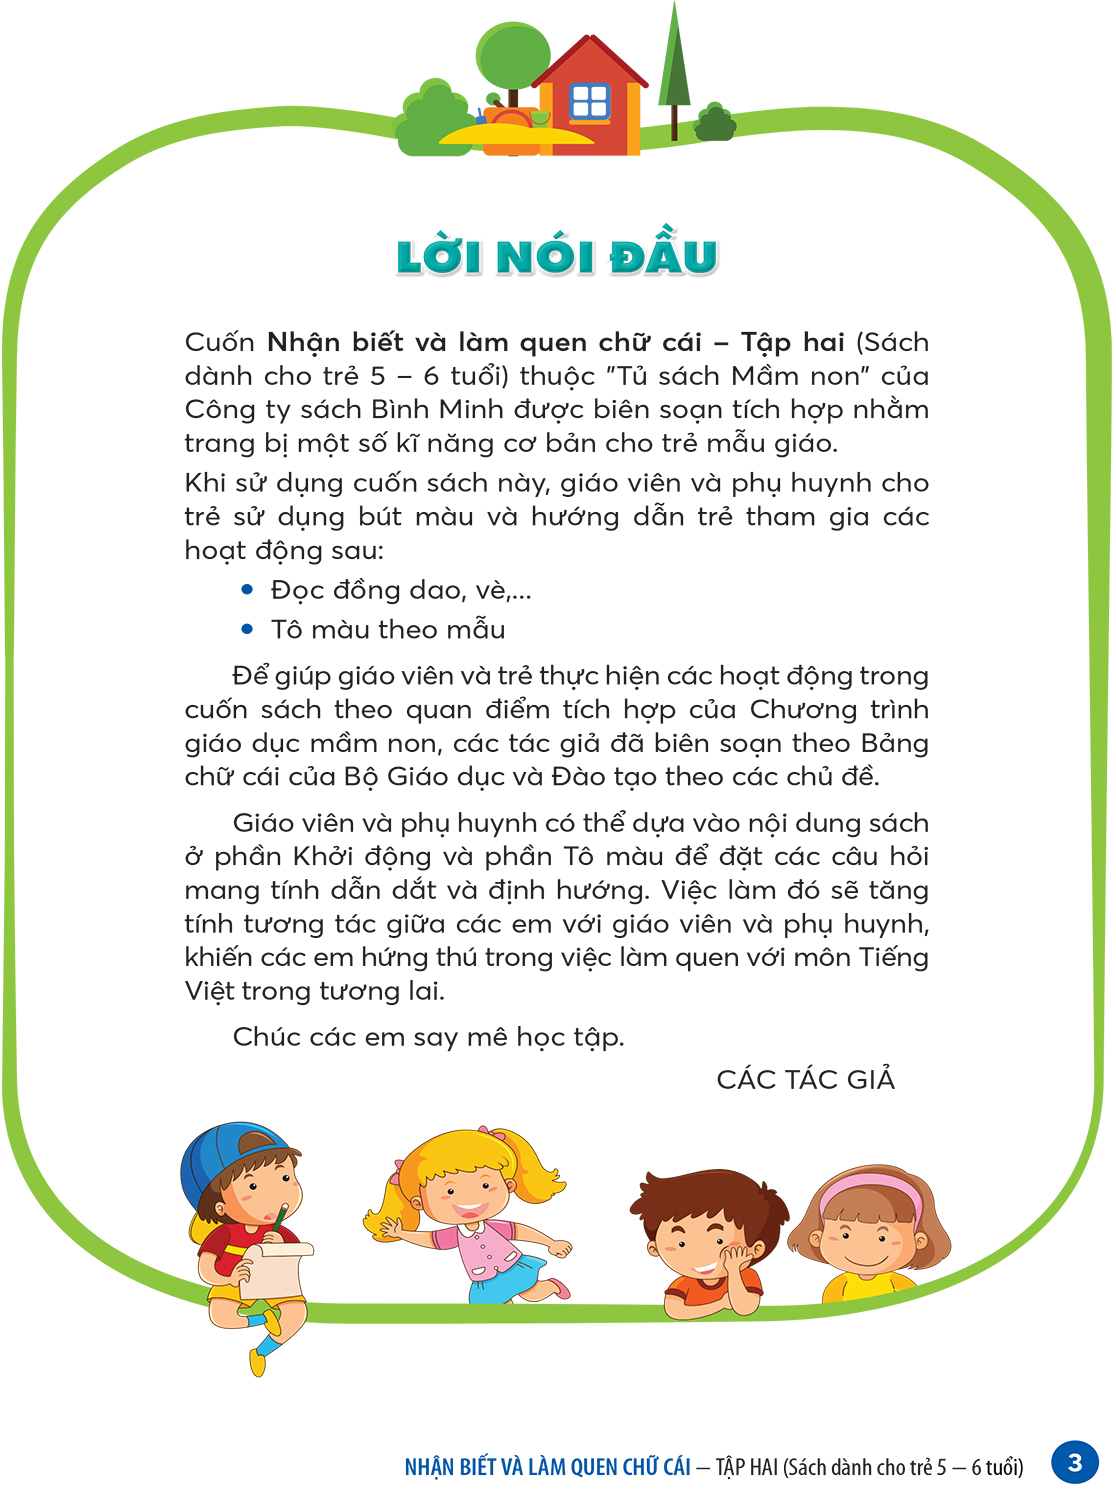 Sách – Nhận biết và làm quen chữ cái – Tập hai (Dành cho trẻ 5 – 6 tuổi) Tập 2